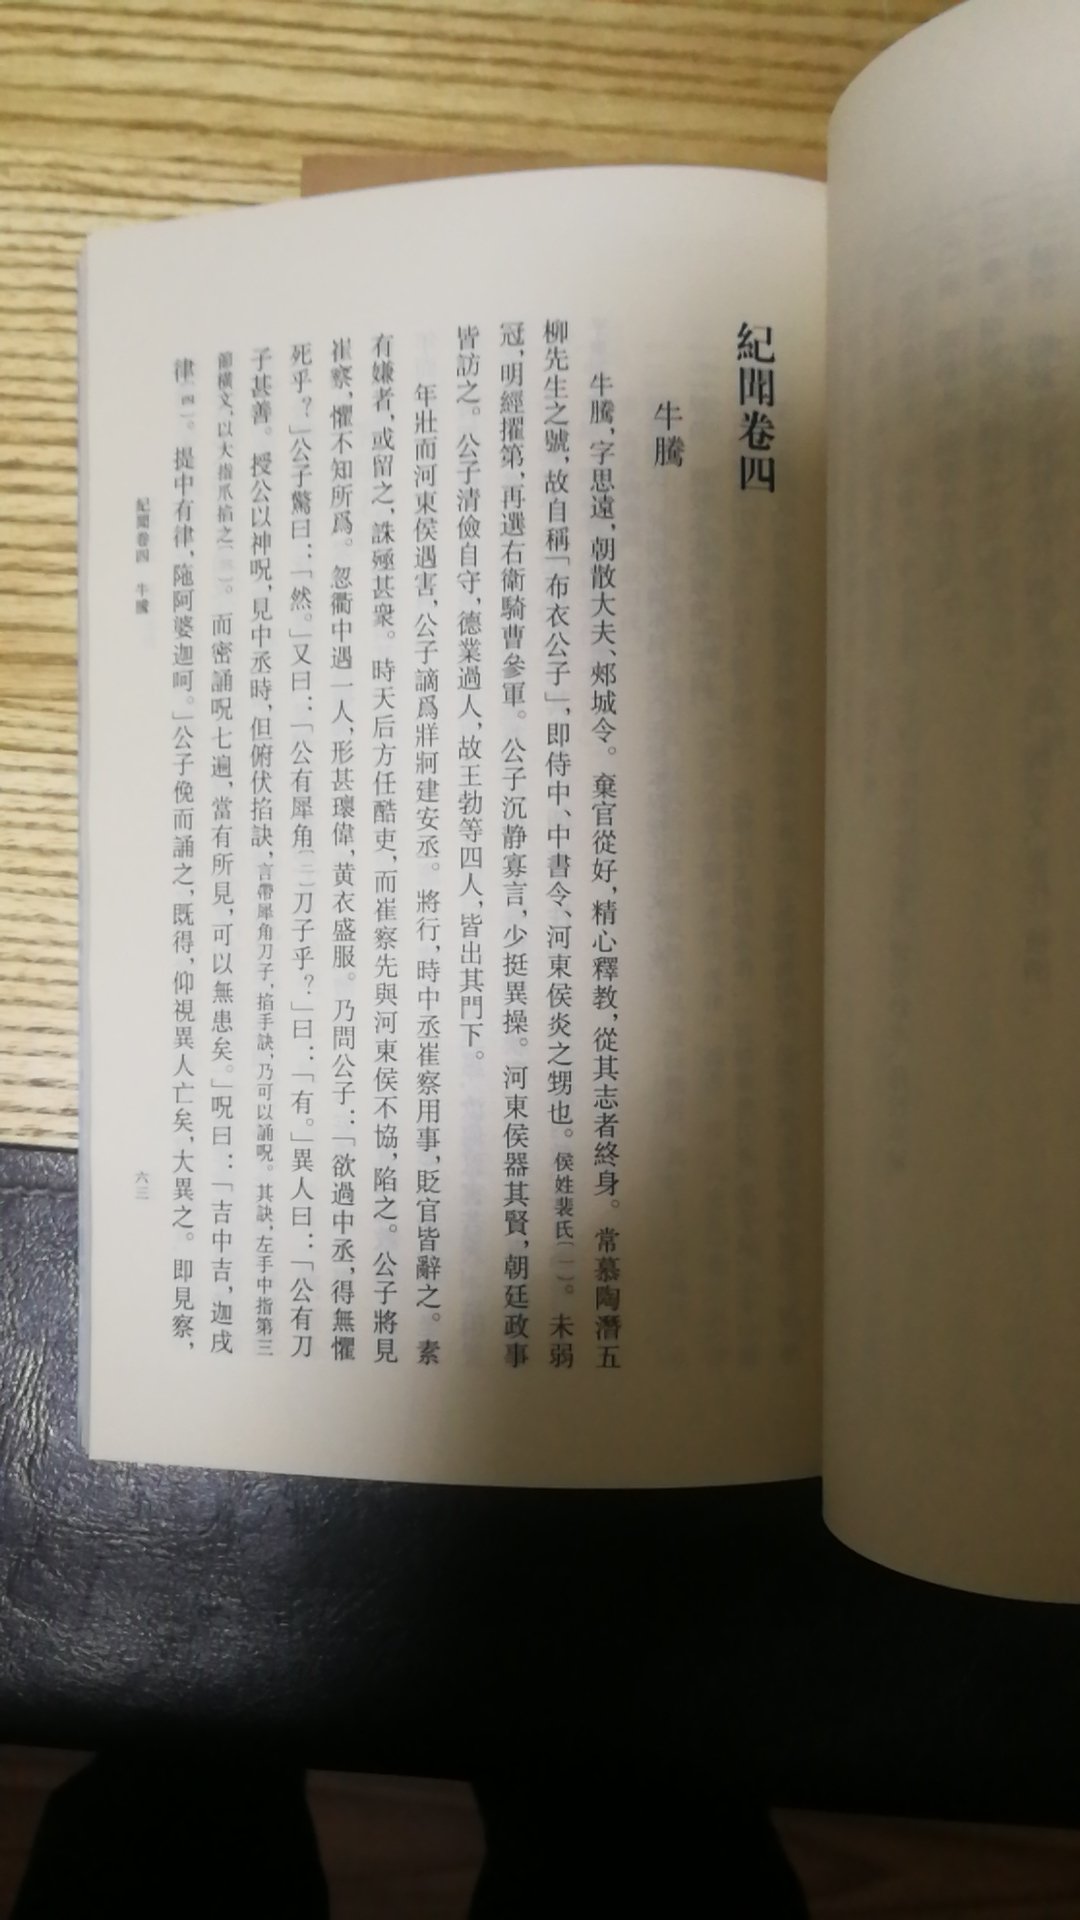 中华书籍出品，必属精品，很喜欢这种古籍，还有故事。